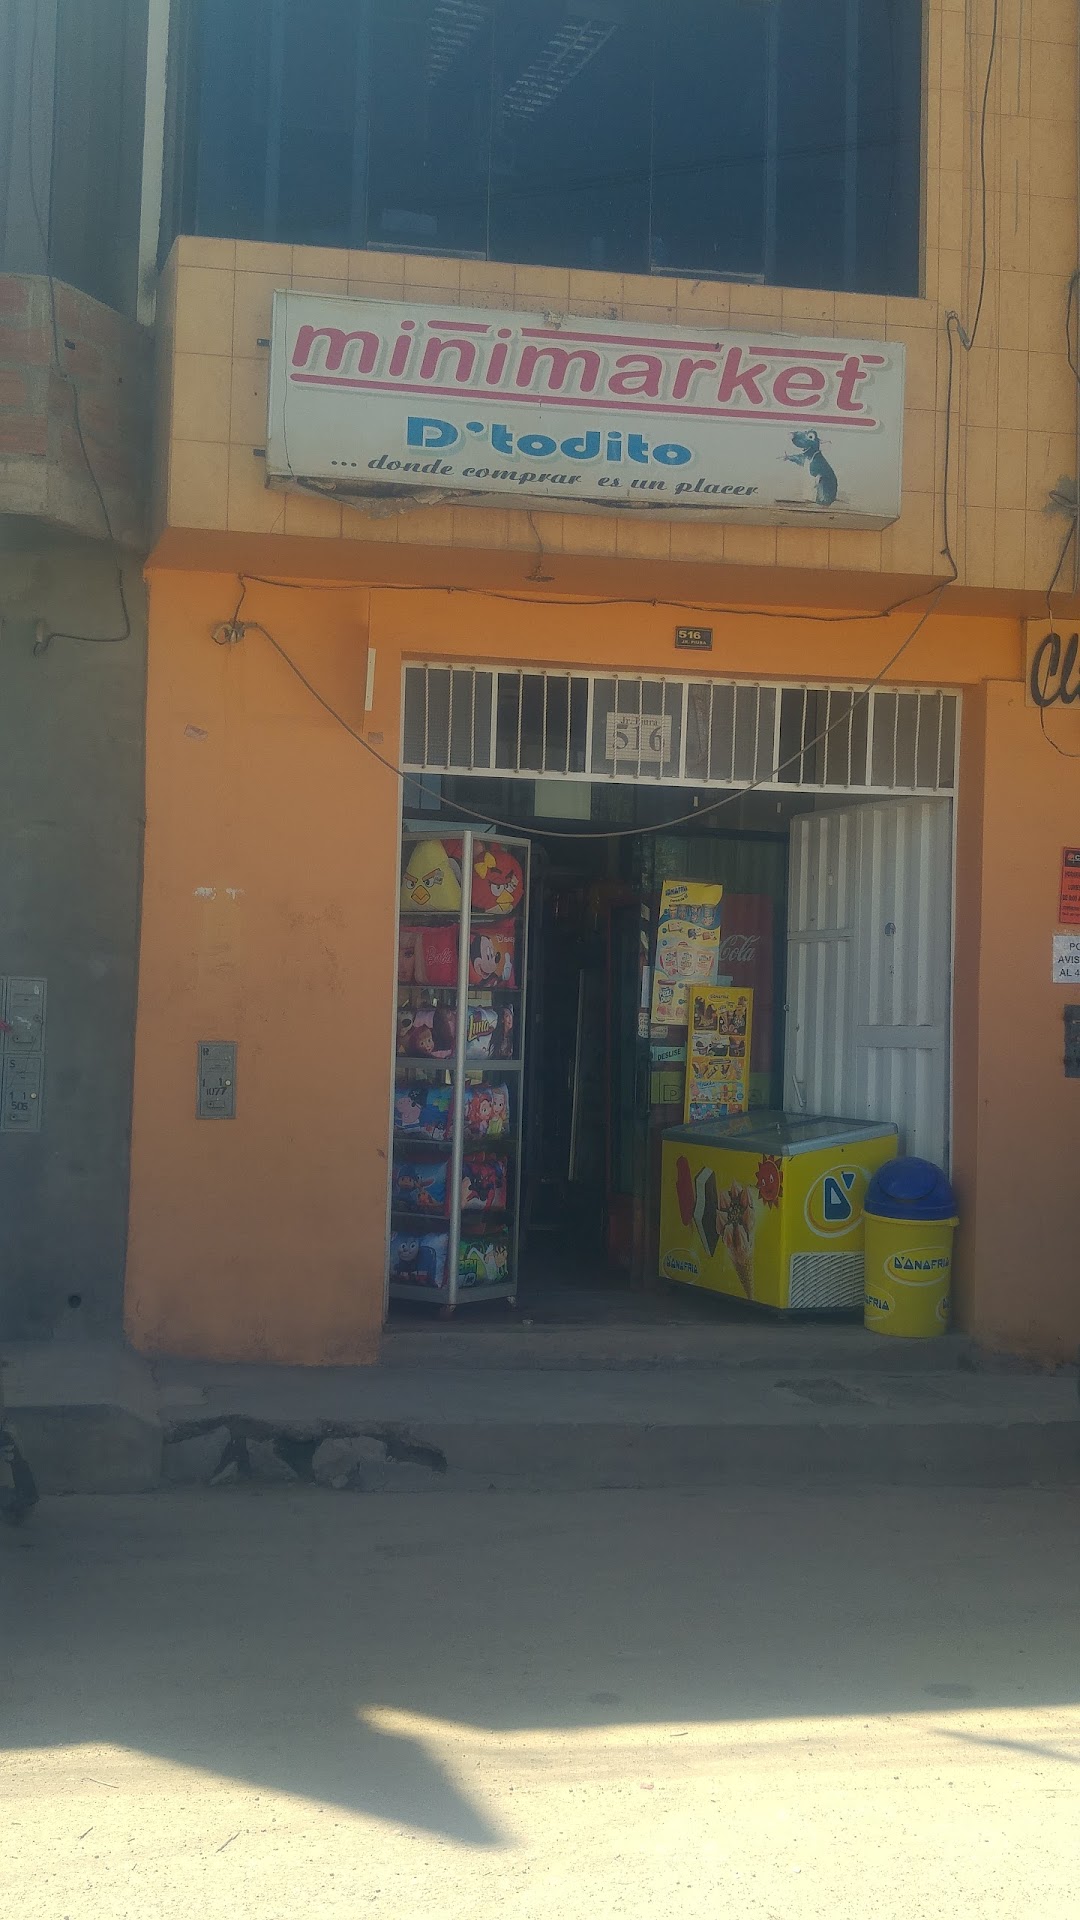 Minimarket El Todito